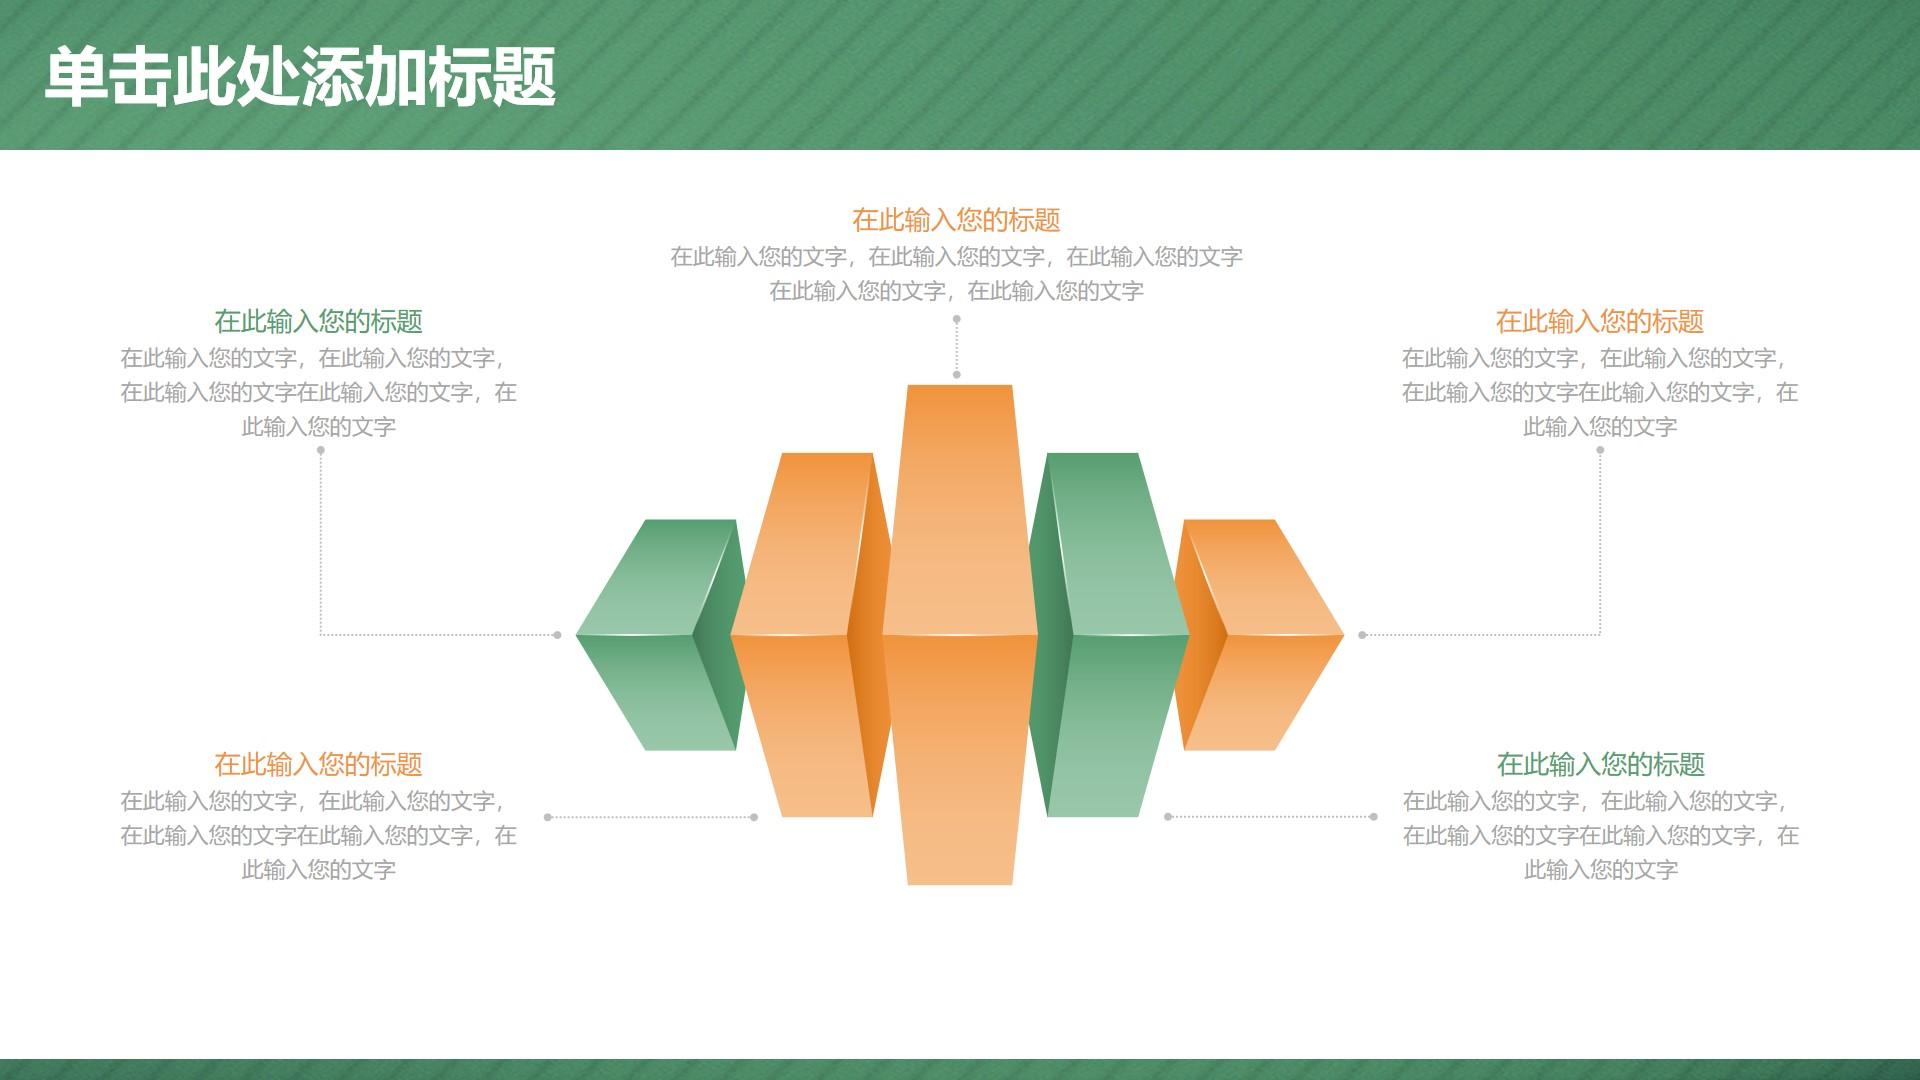 教育教学绿色橙色卡通简洁云素材PPT模板1672661749803